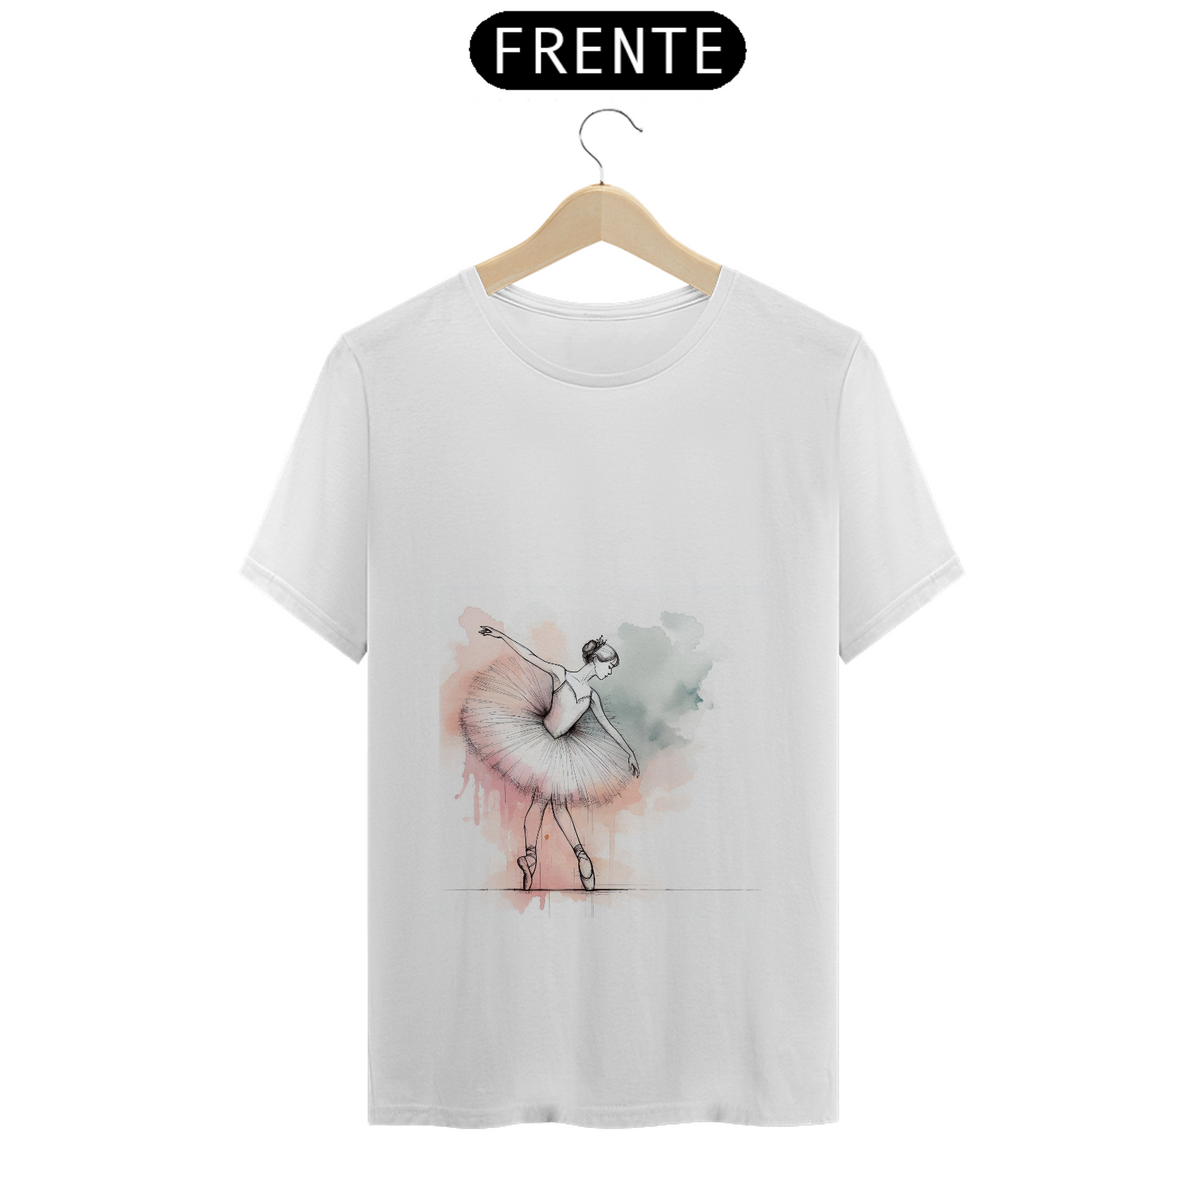 Nome do produto: T-shirt - Fernanda